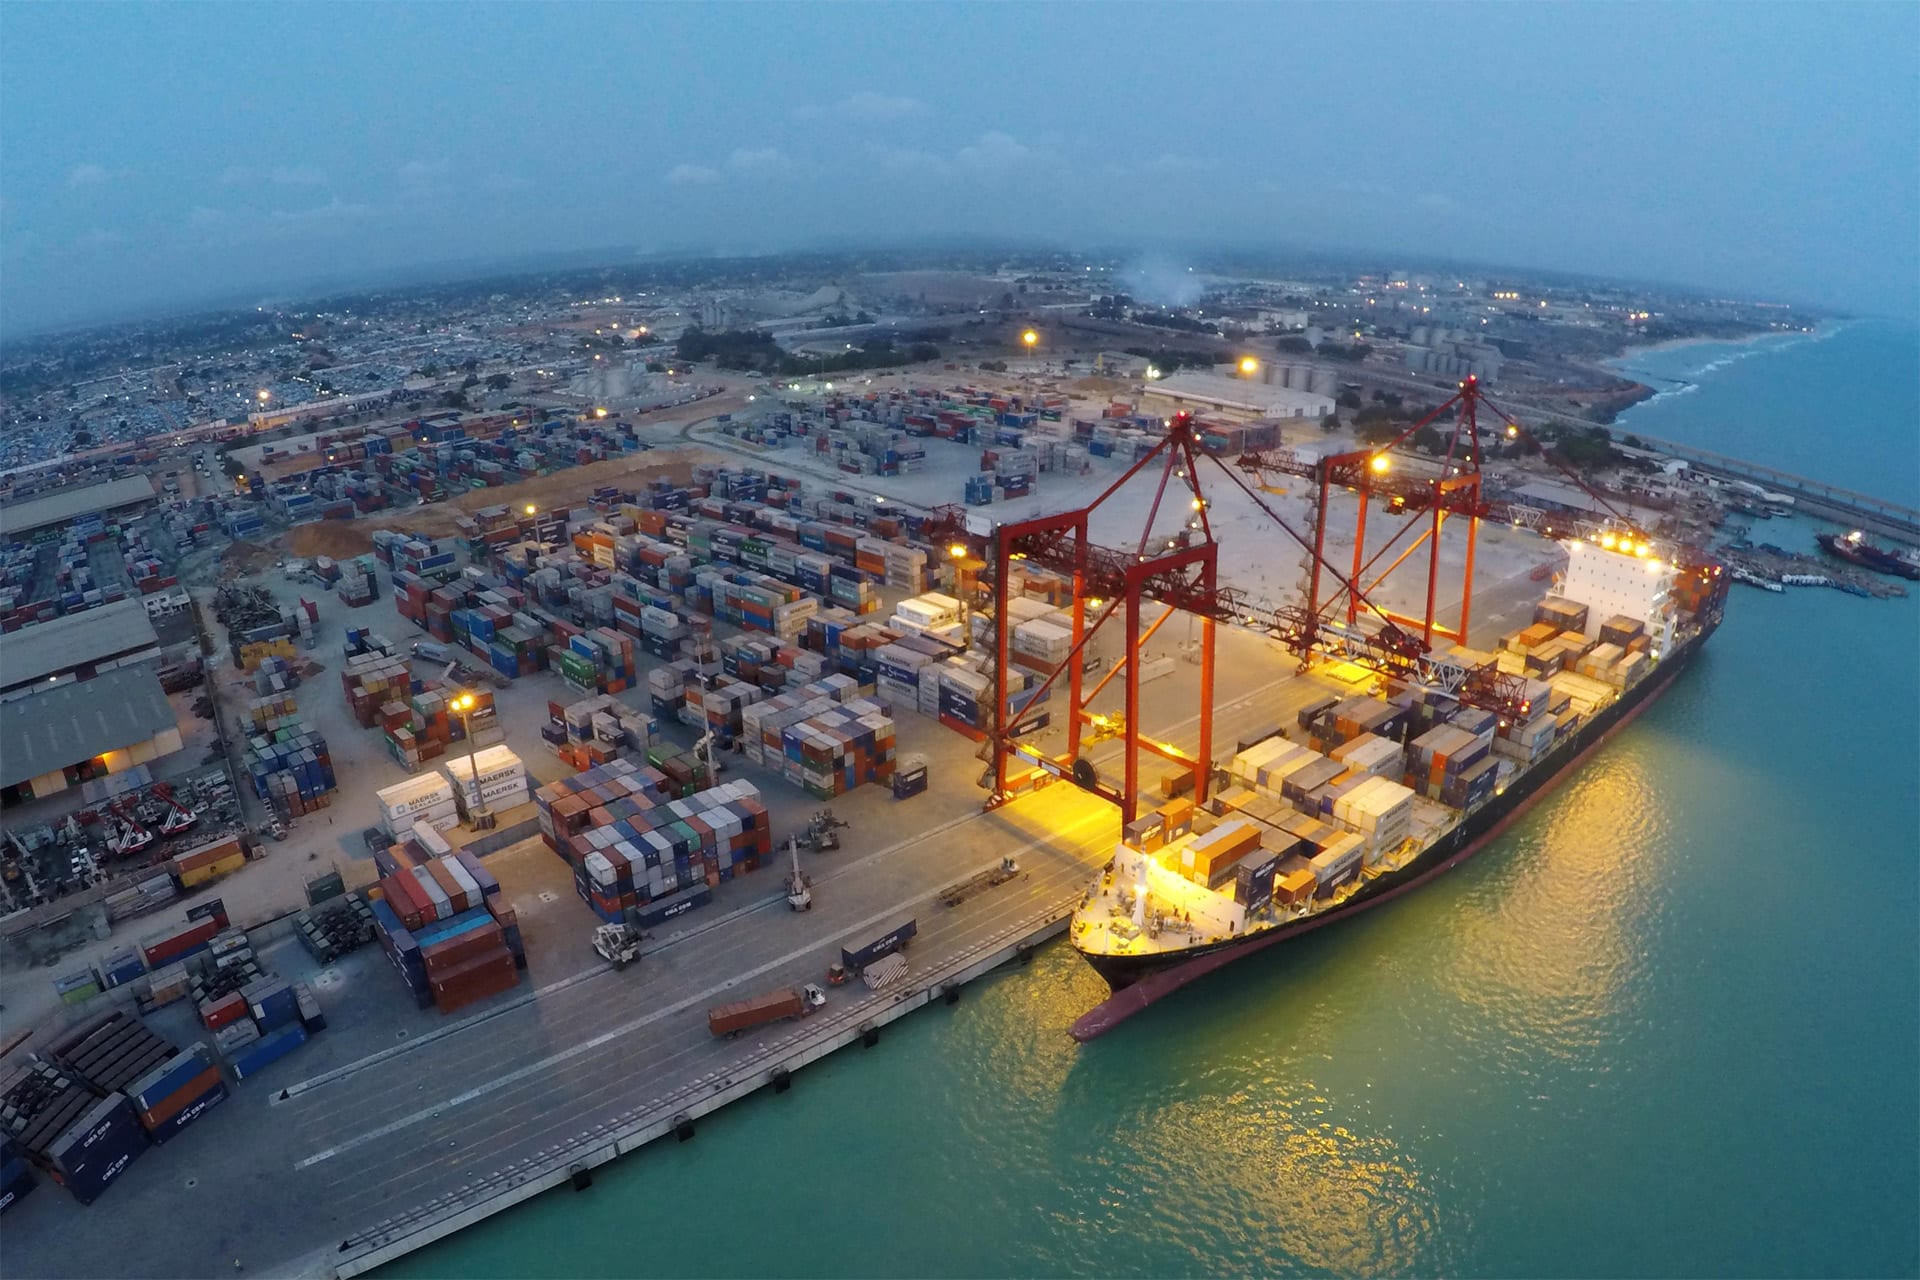 port autonome lome - Commerce : le Togo subit une perte de 2000 milliards FCFA à cause de la fausse facturation